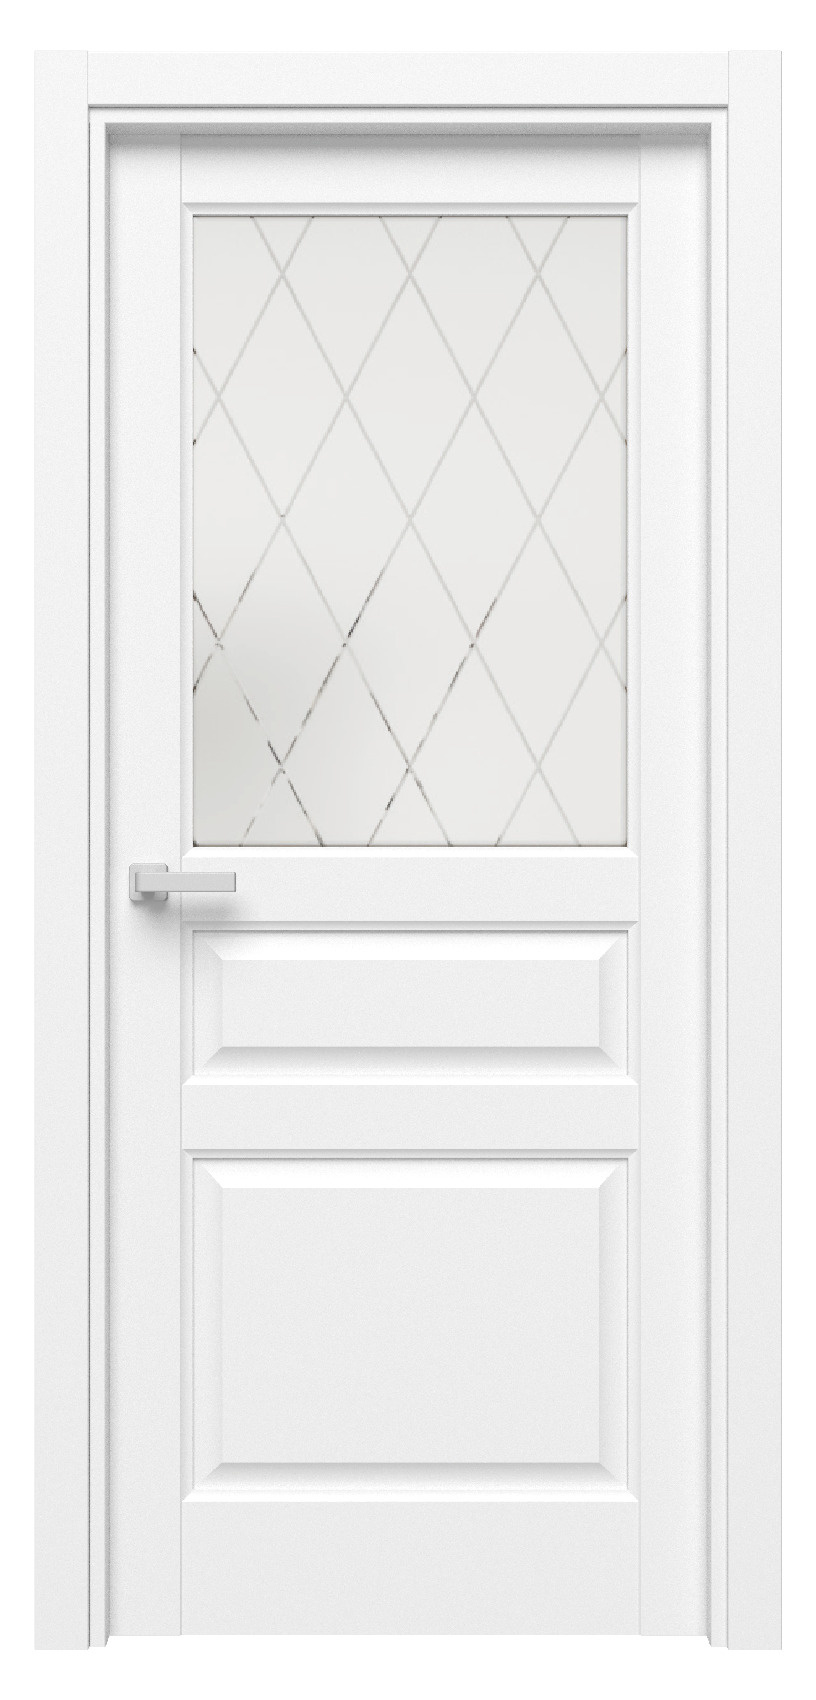 Questdoors Межкомнатная дверь QD4, арт. 17517 - фото №1